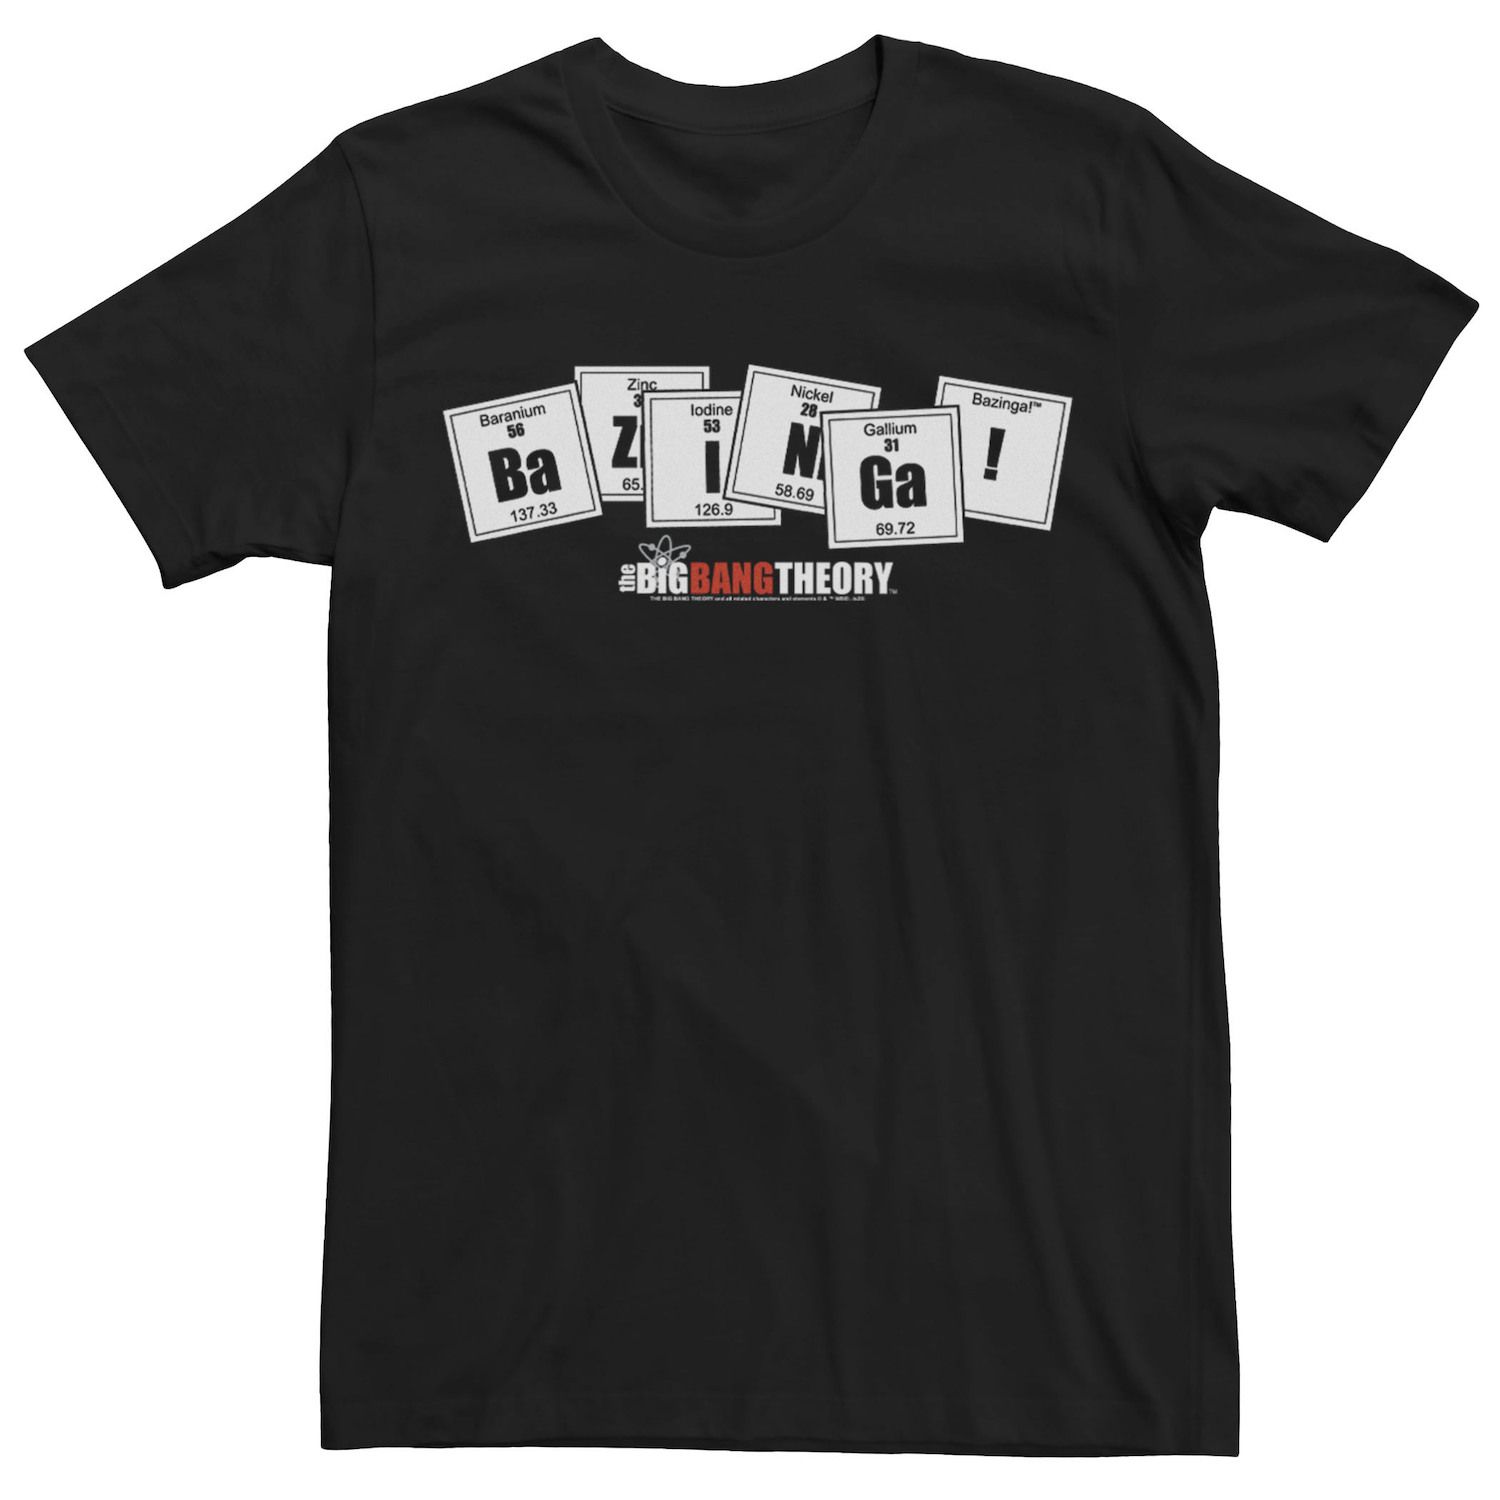 Мужская футболка Bazinga с периодической плиткой «Теория большого взрыва» Licensed Character мужская футболка с принтом теория большого взрыва блестящая футболка с коротким рукавом мужская брендовая черная футболка с графическим